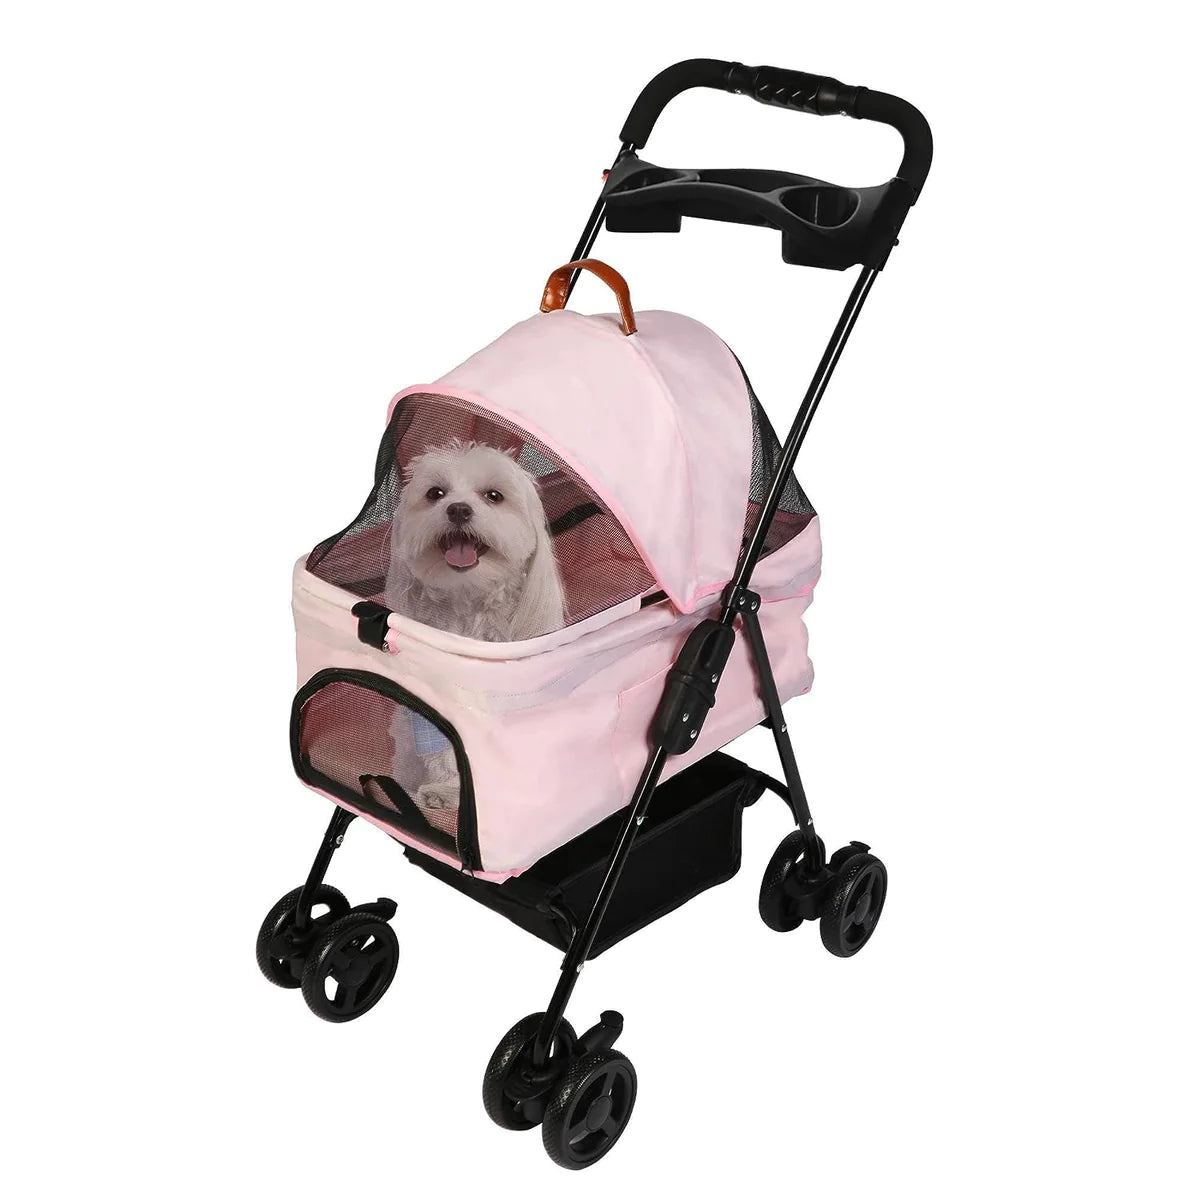 Folding Dog Stroller Carrier Pet Stroller with Storage Basket, Pink